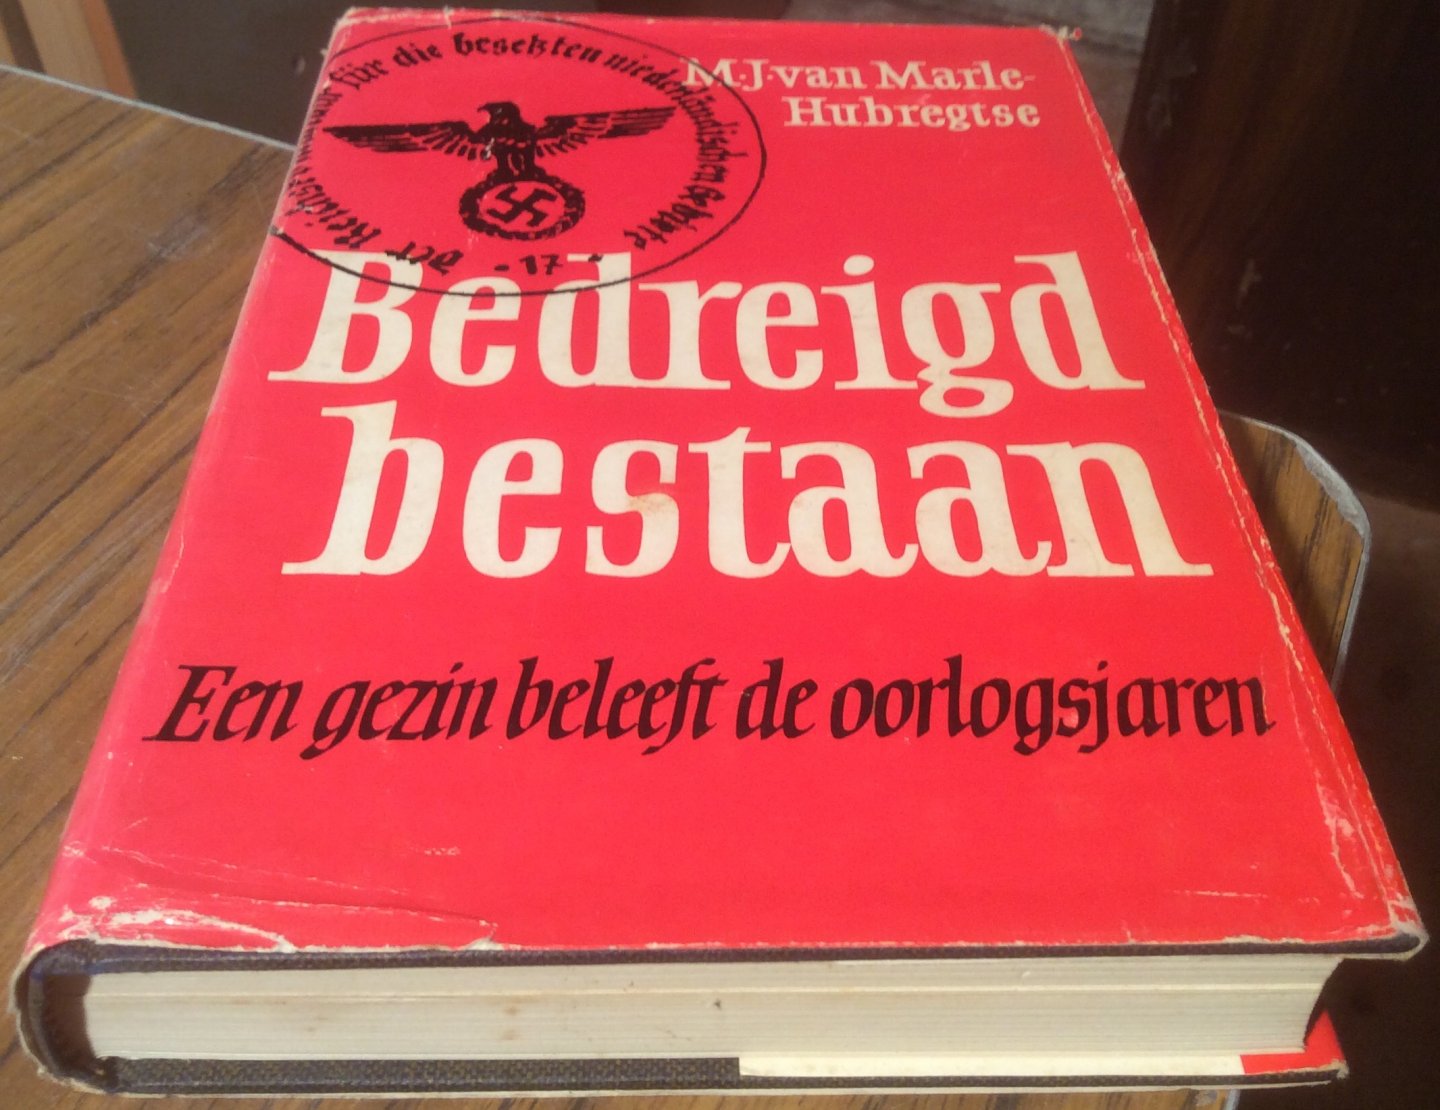 Marle-Hubregtse, M.J. van - Bedreigd Bestaan